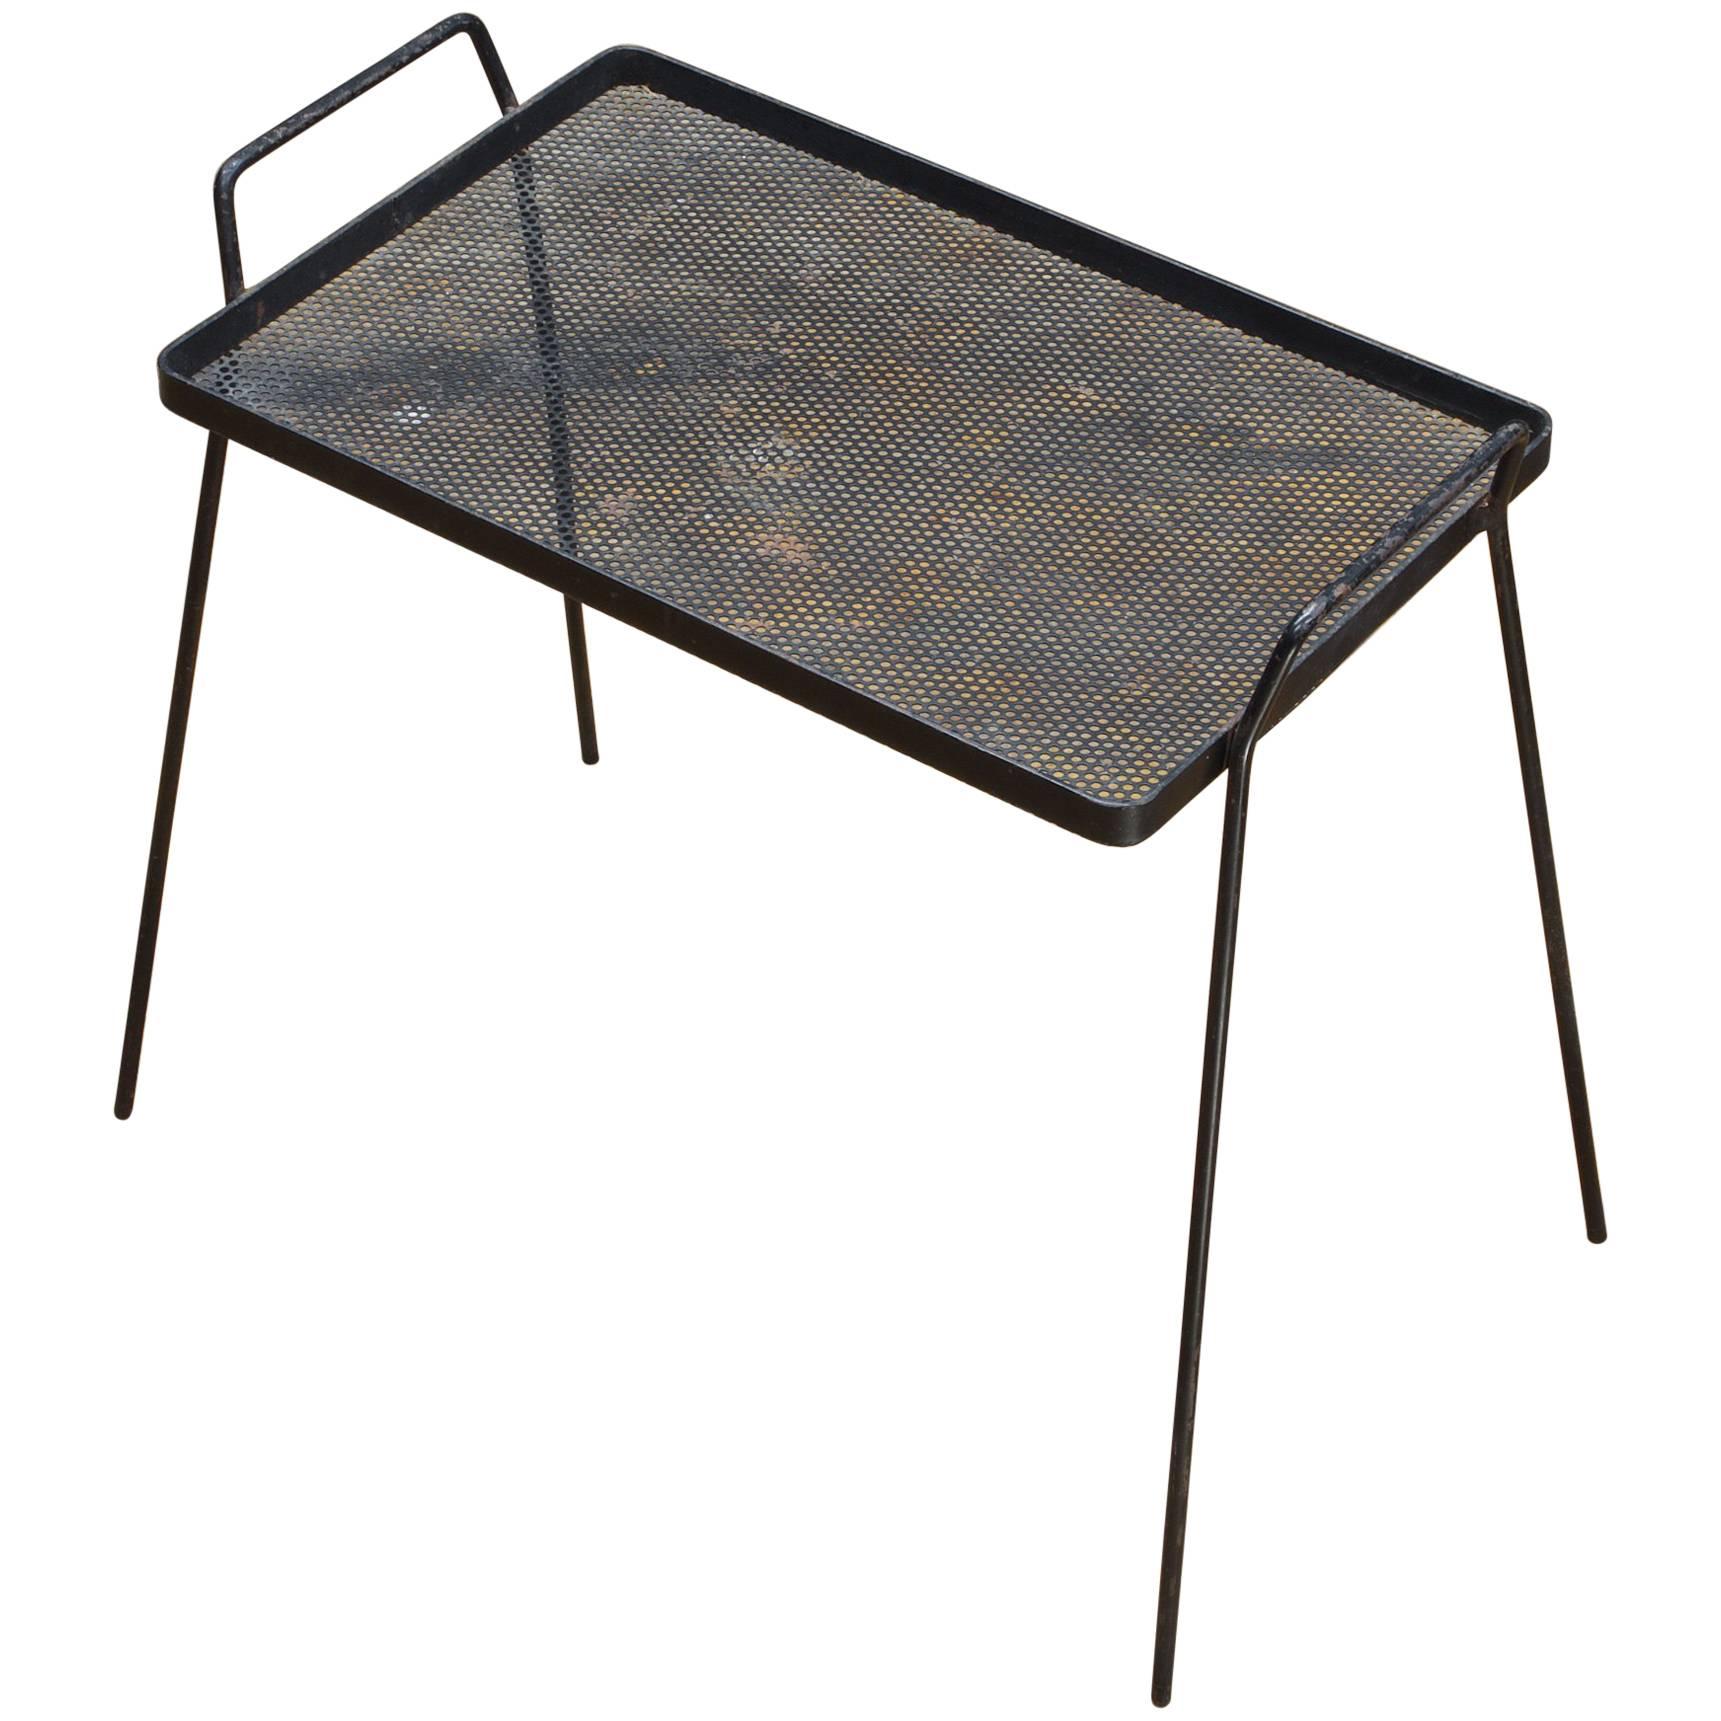 Table d'appoint Cabinmodern avec plateau de service en métal perforé des années 1950, Architectes minimalistes